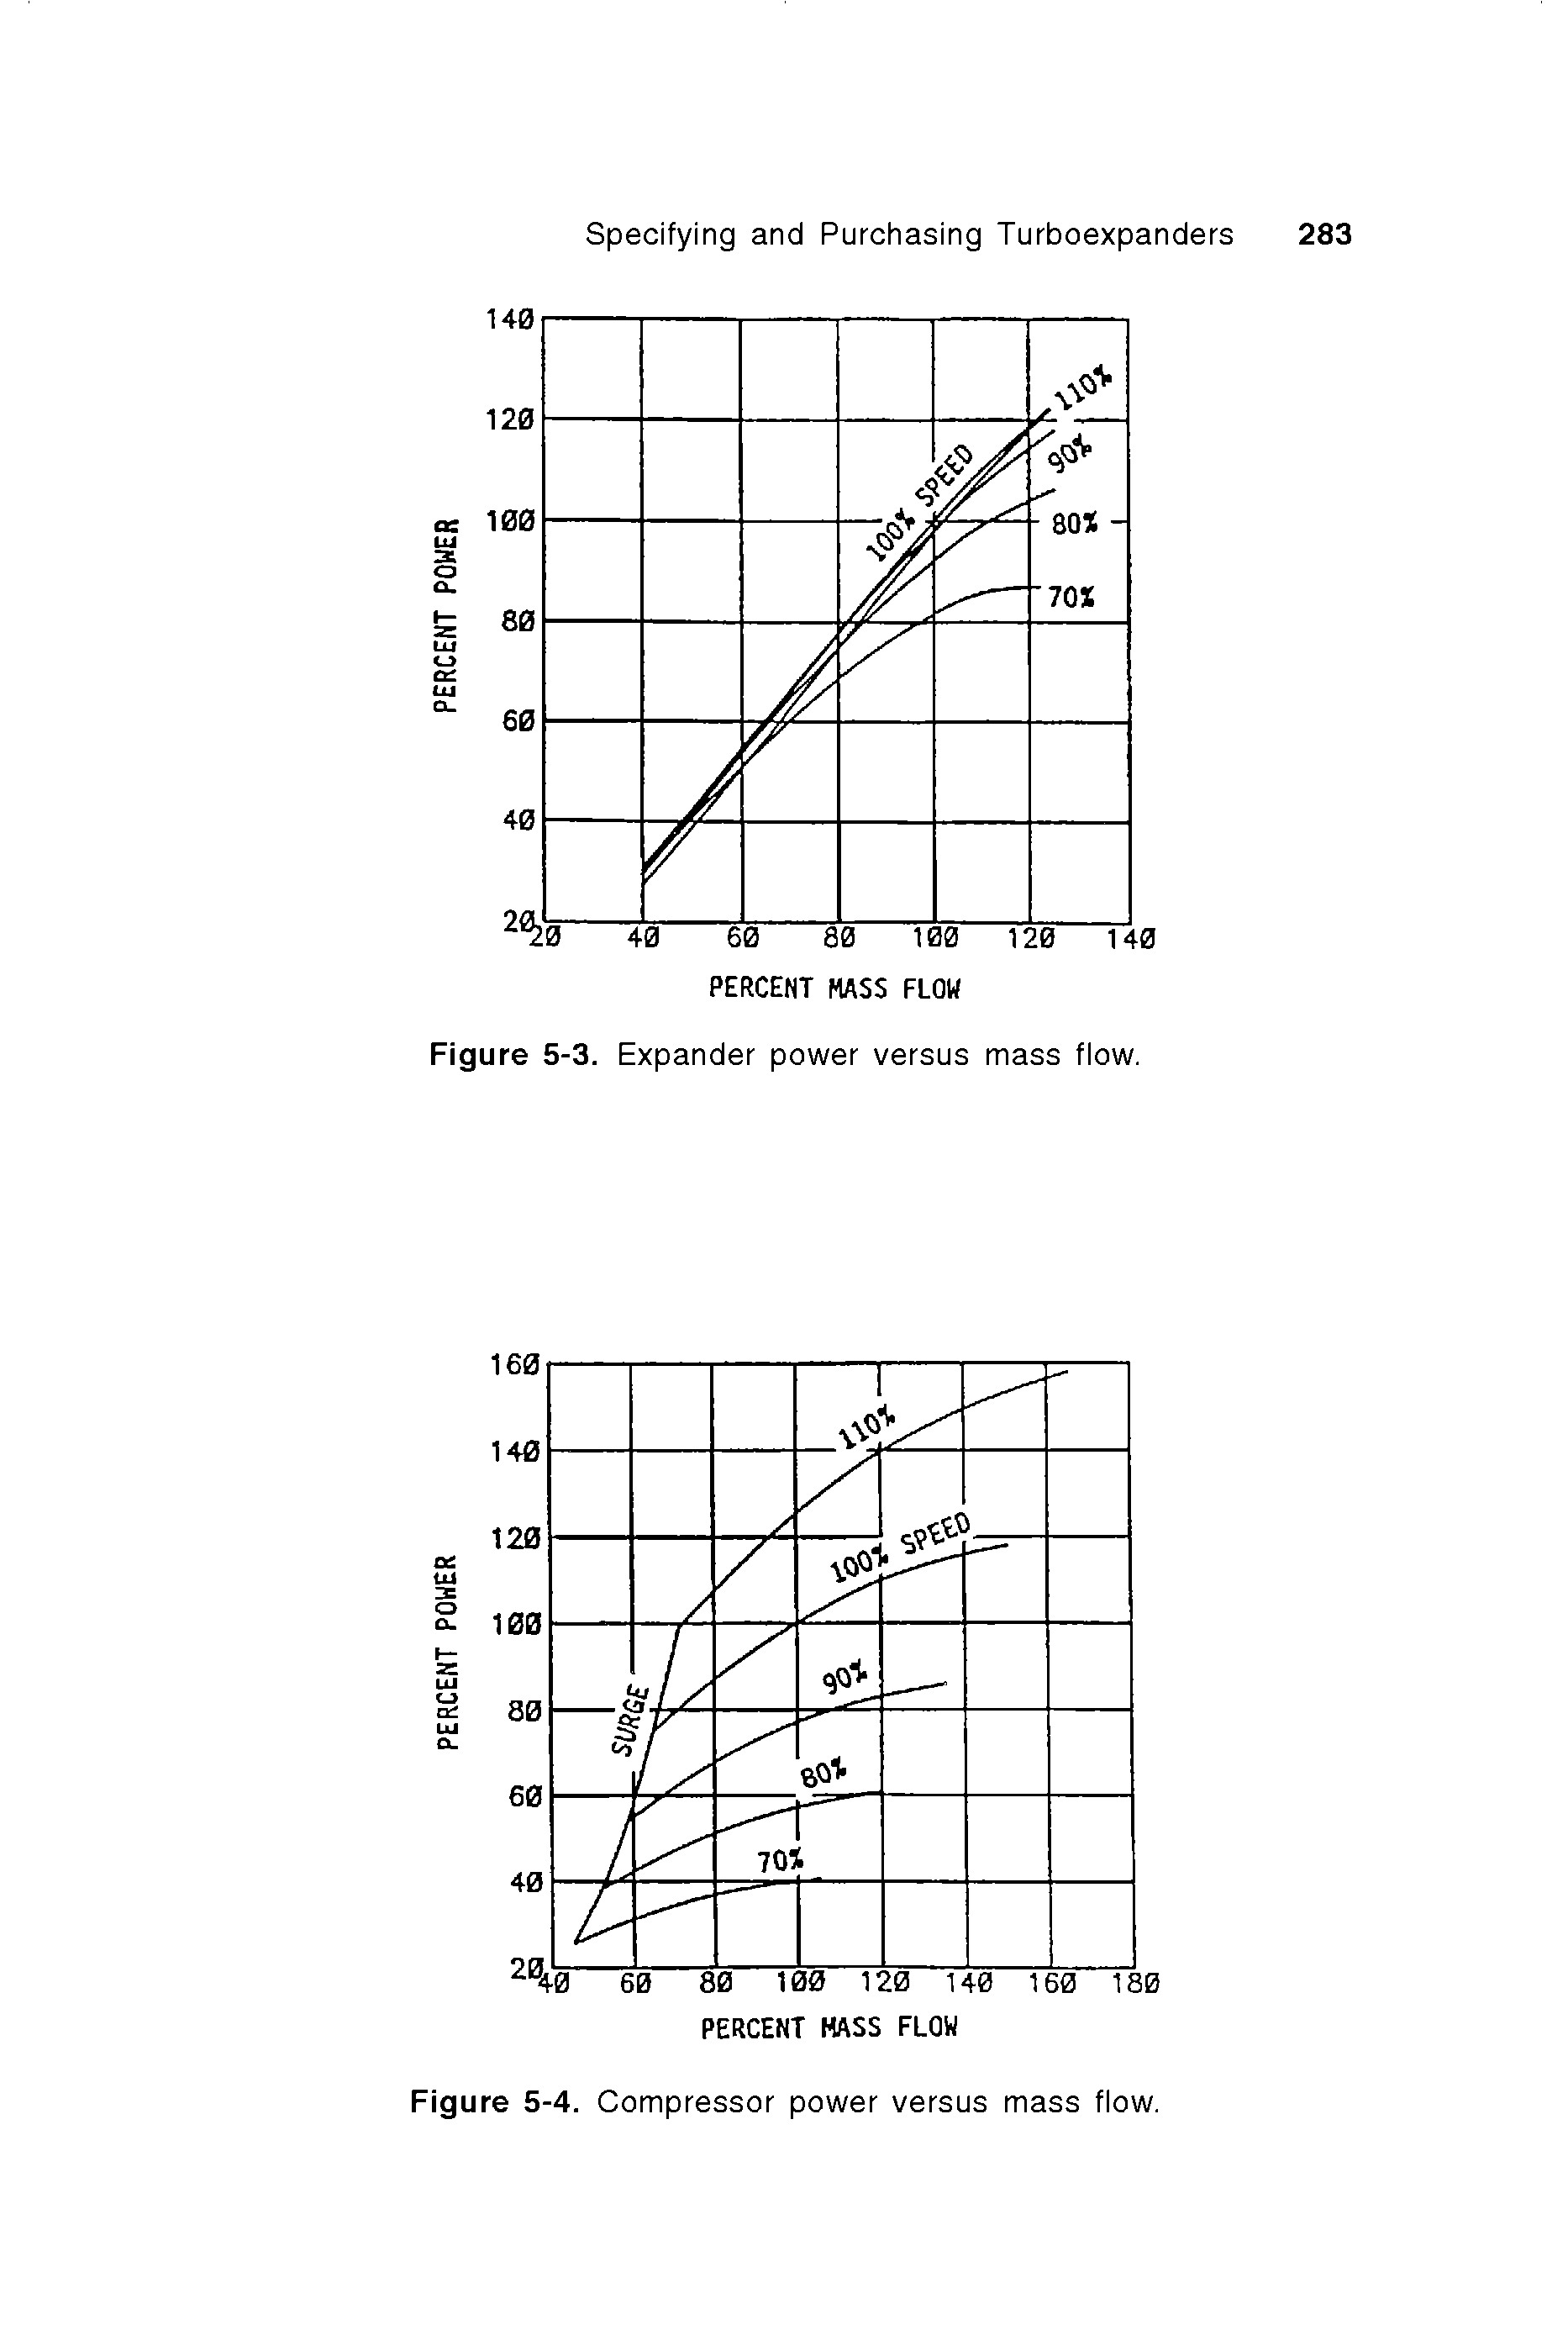 Figure 5-4. Compressor power versus mass flow.